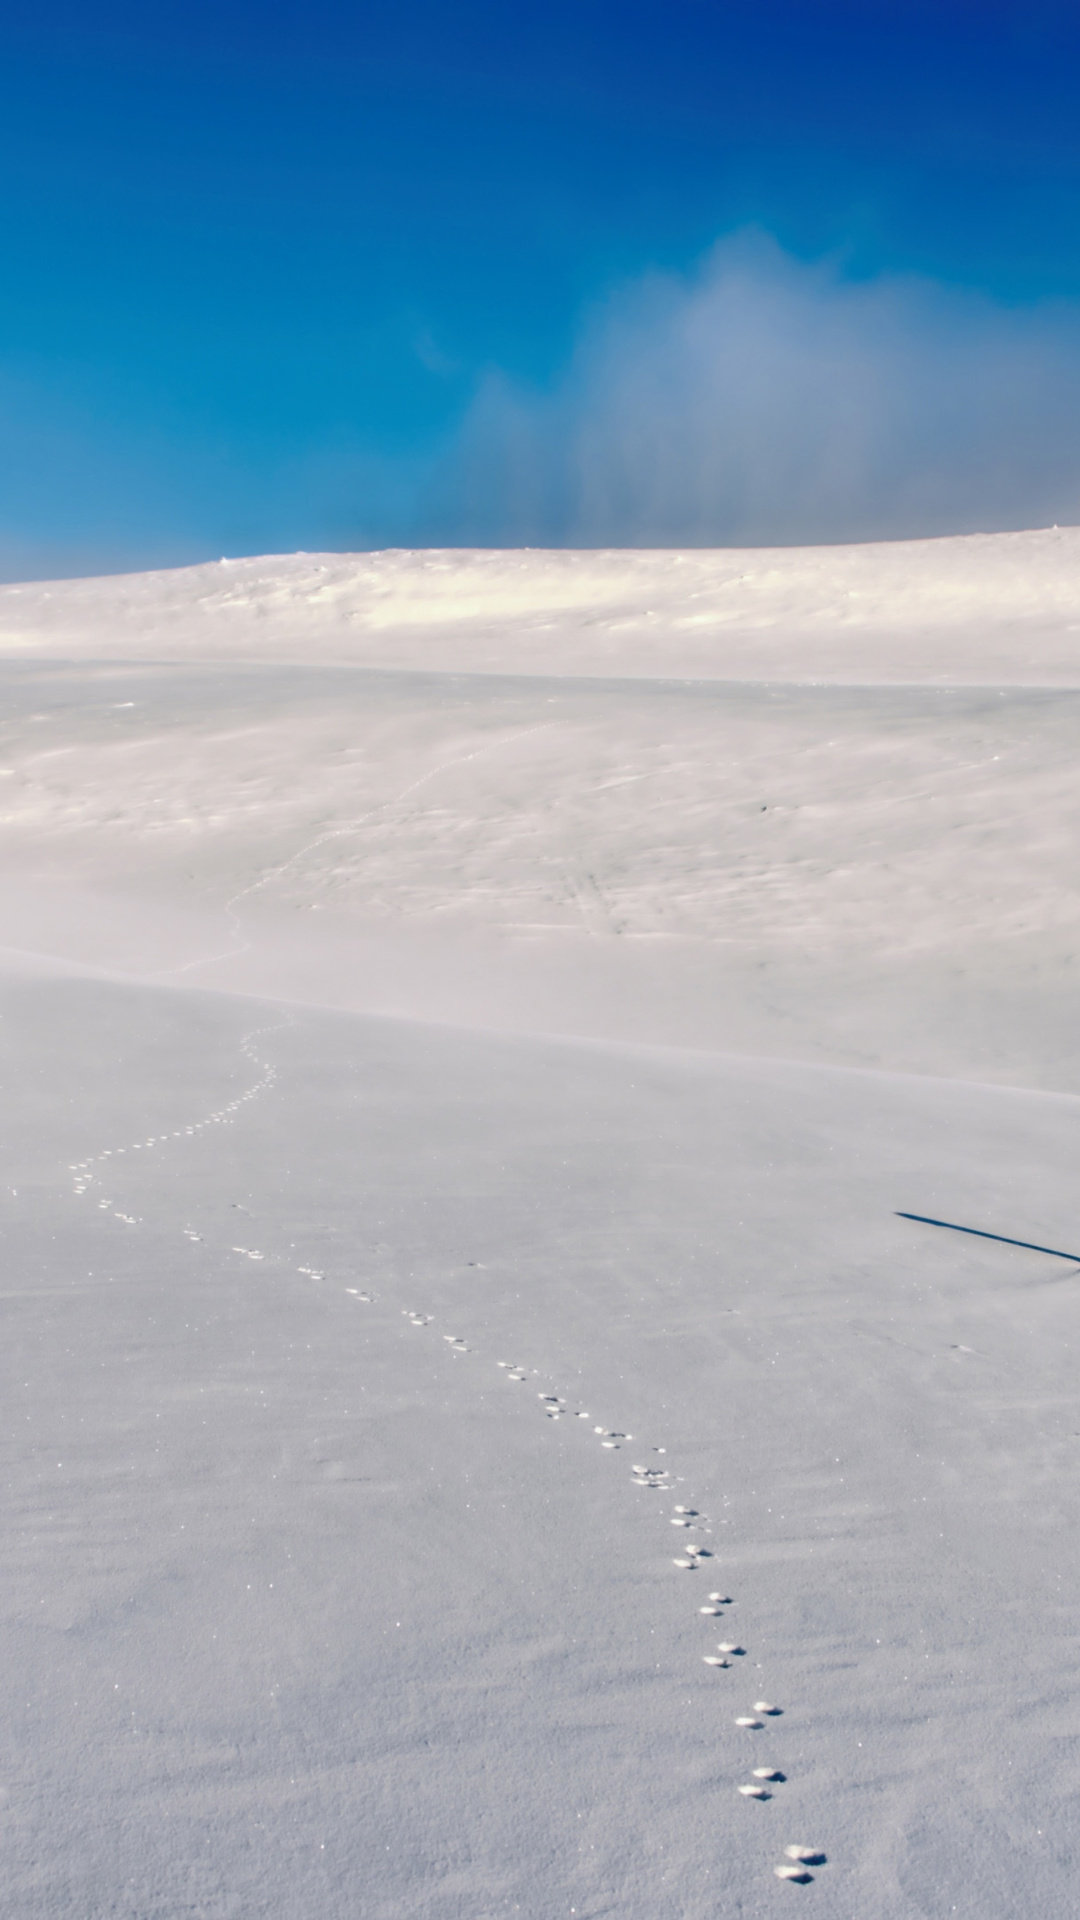 Footprints on snow field screenshot #1 1080x1920